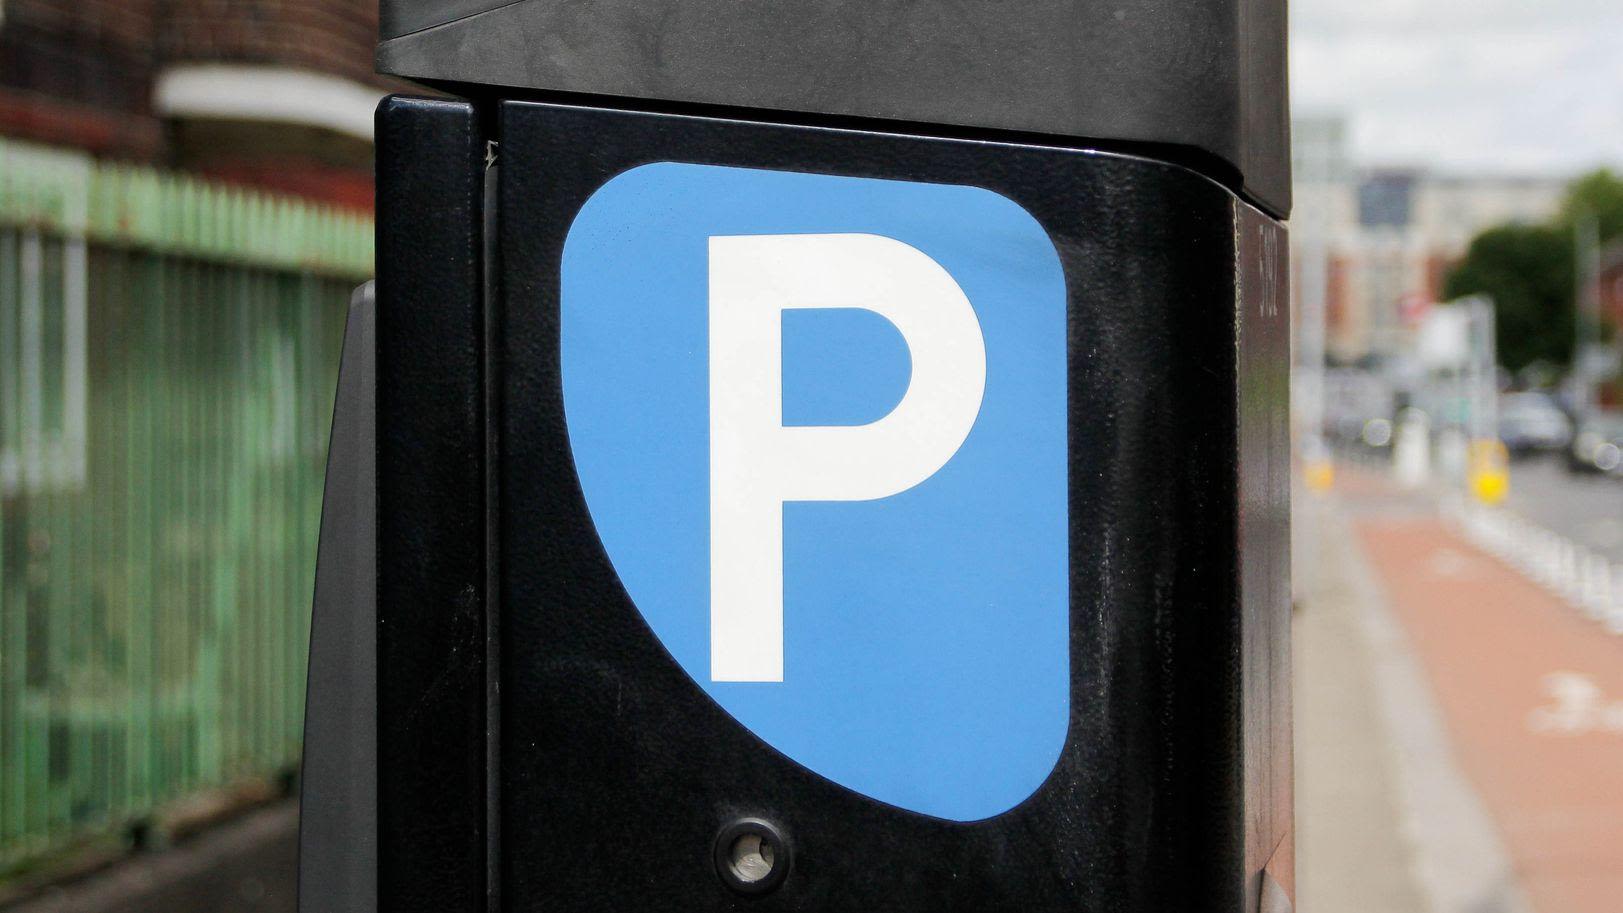 Motorists warned over fake parking meter QR codes